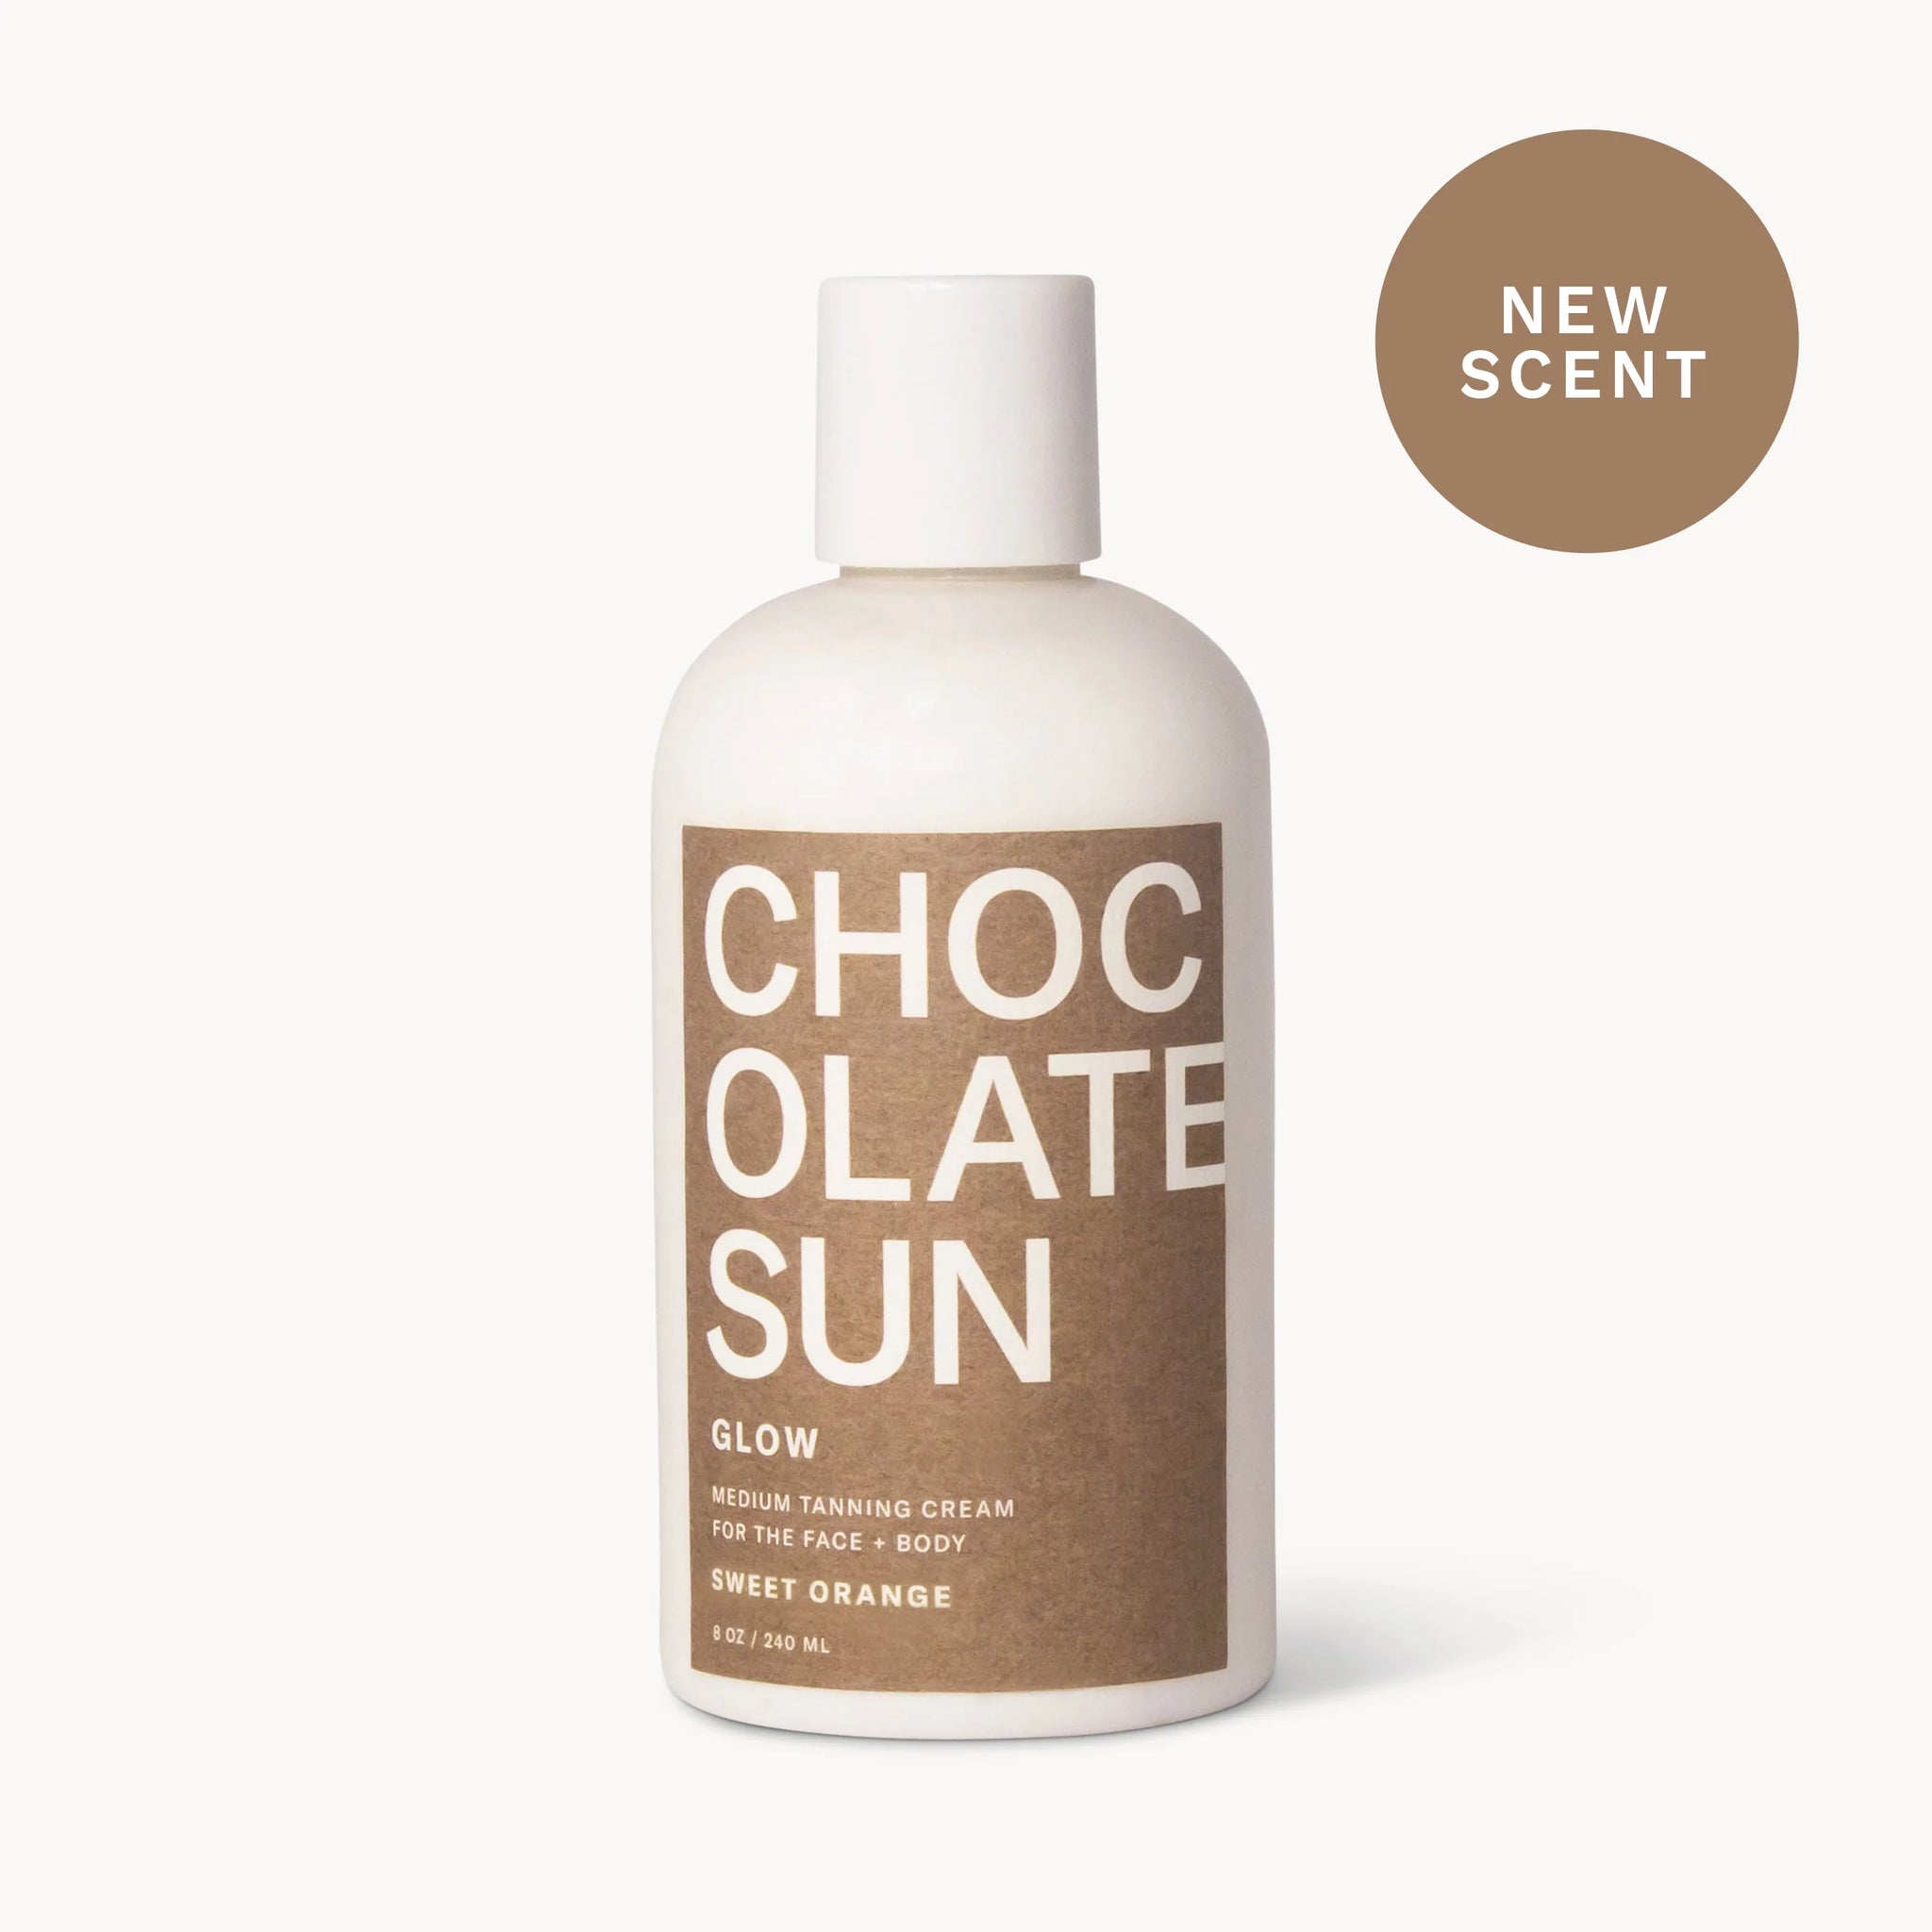 GLOW™ – Medium Tanning Cream for Face + Body